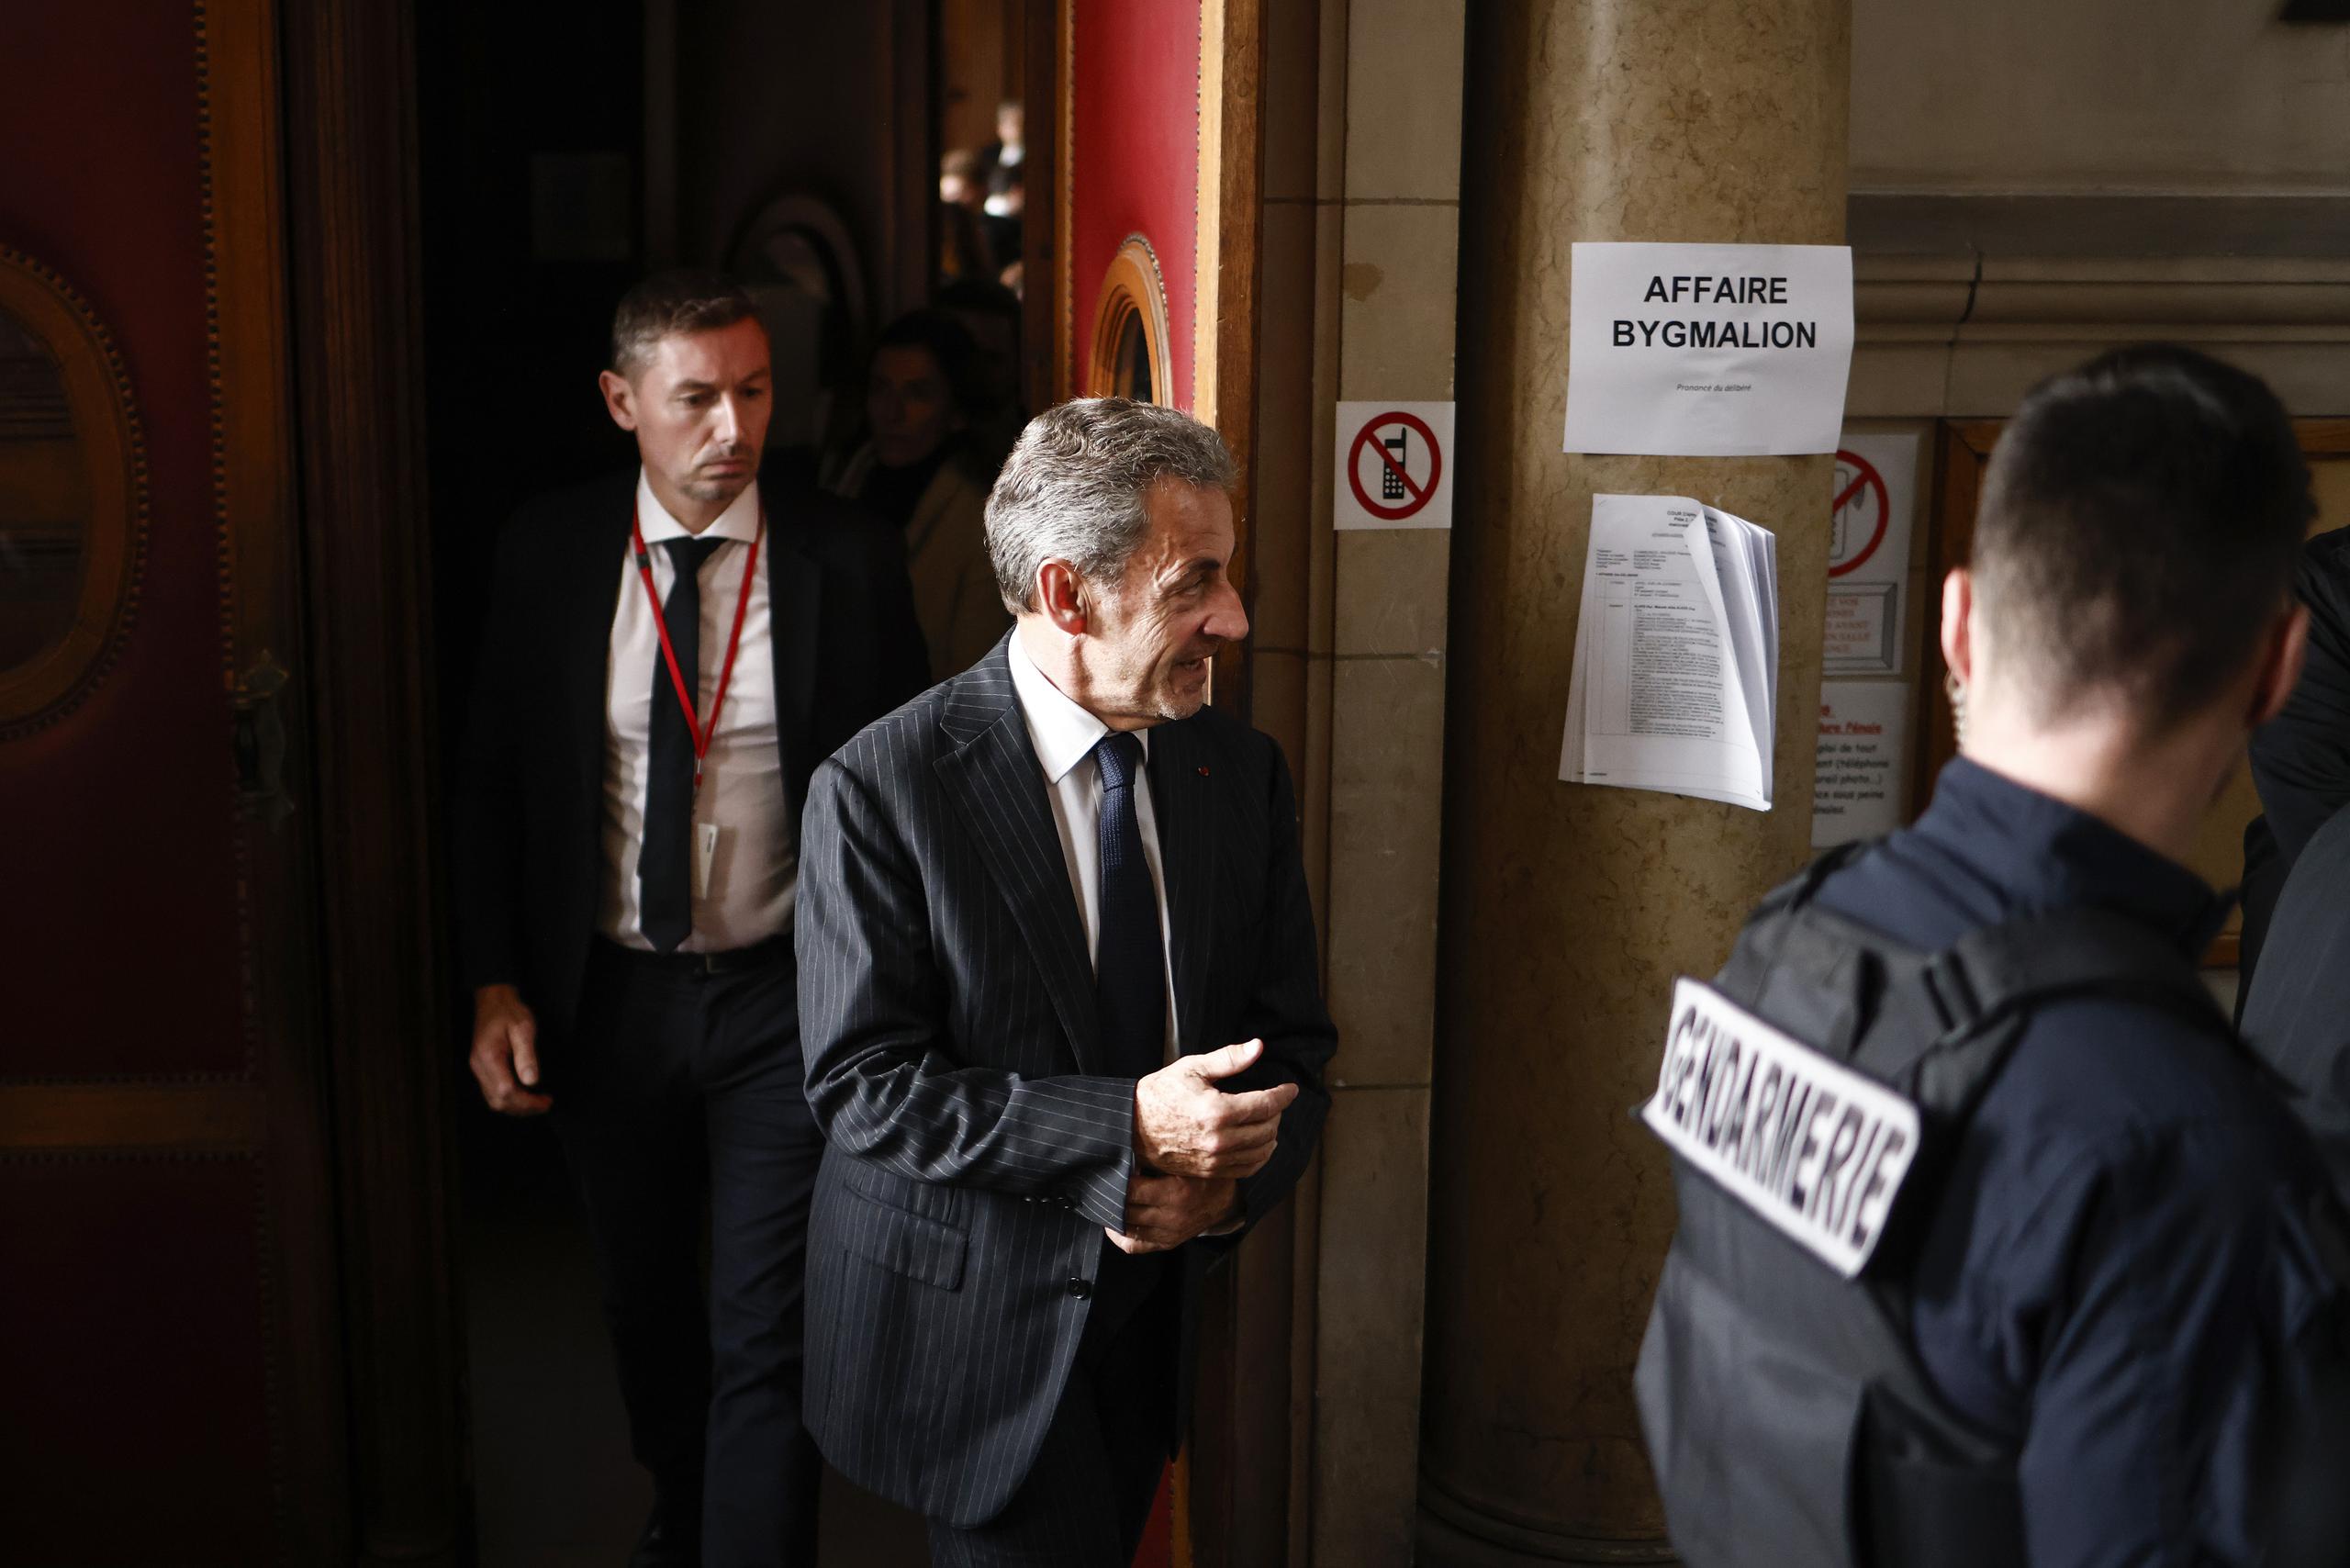 El ex presidente francés Nicolas Sarkozy (Centro) fue condenado a un año de prisión con seis meses suspendidos por el tribunal de apelaciones de París por exceder el techo de gasto electoral durante su campaña presidencial en 2012.